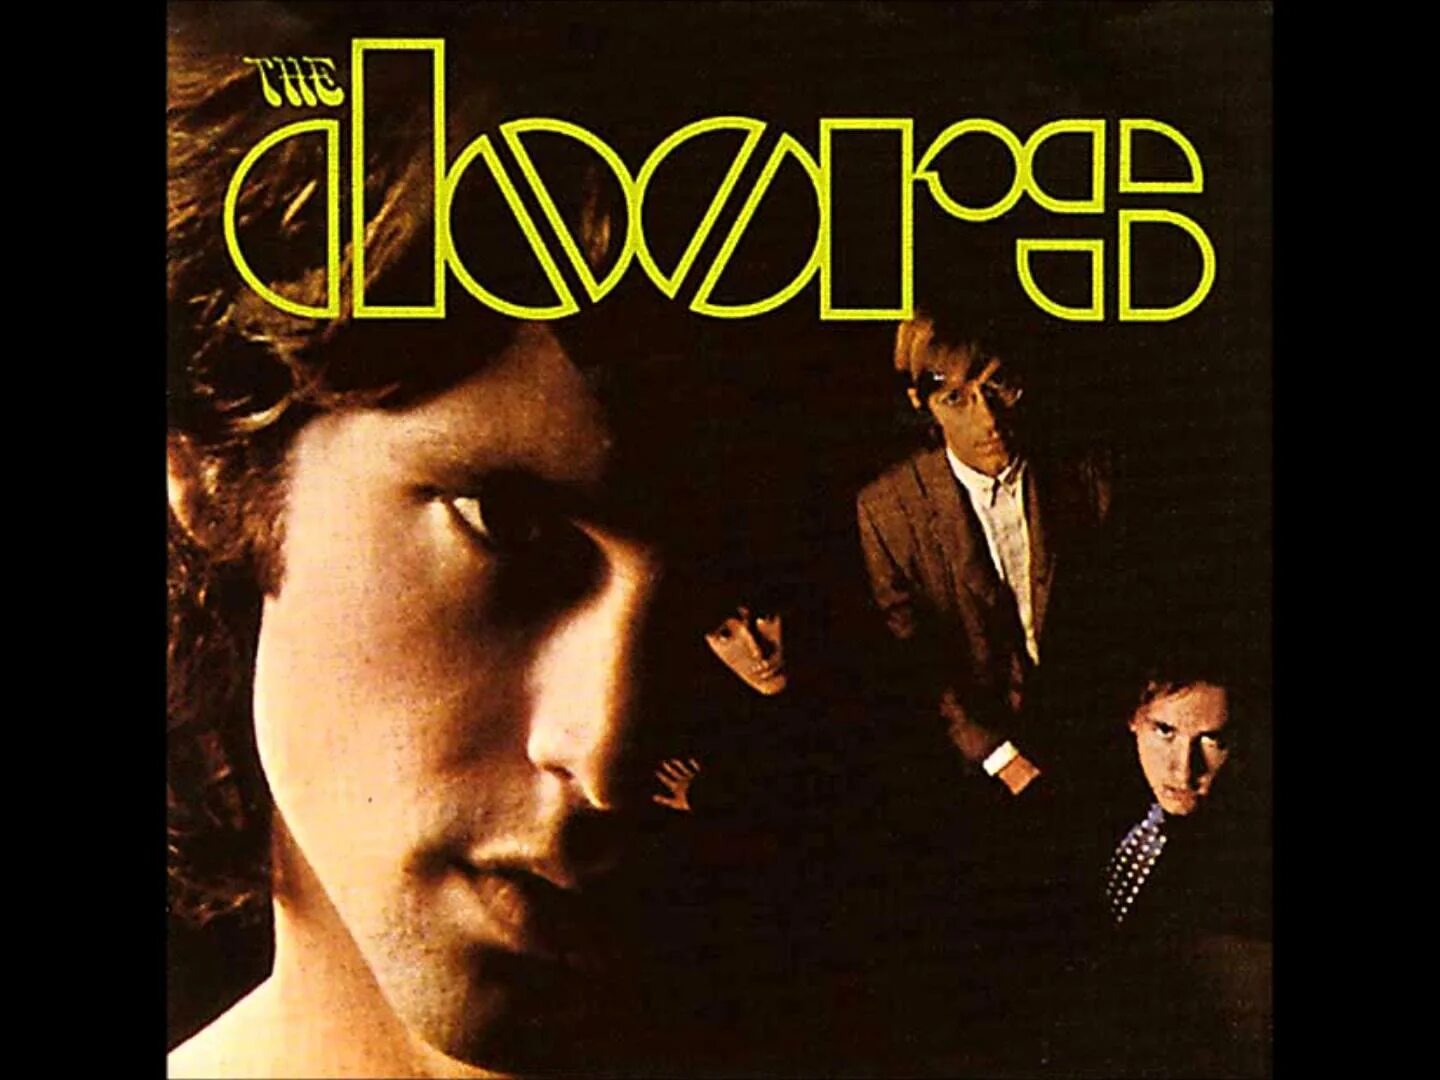 Песня my door. The Doors 1967 обложка. The Doors the Doors обложка. Doors the end обложка. The Doors обложки альбомов.